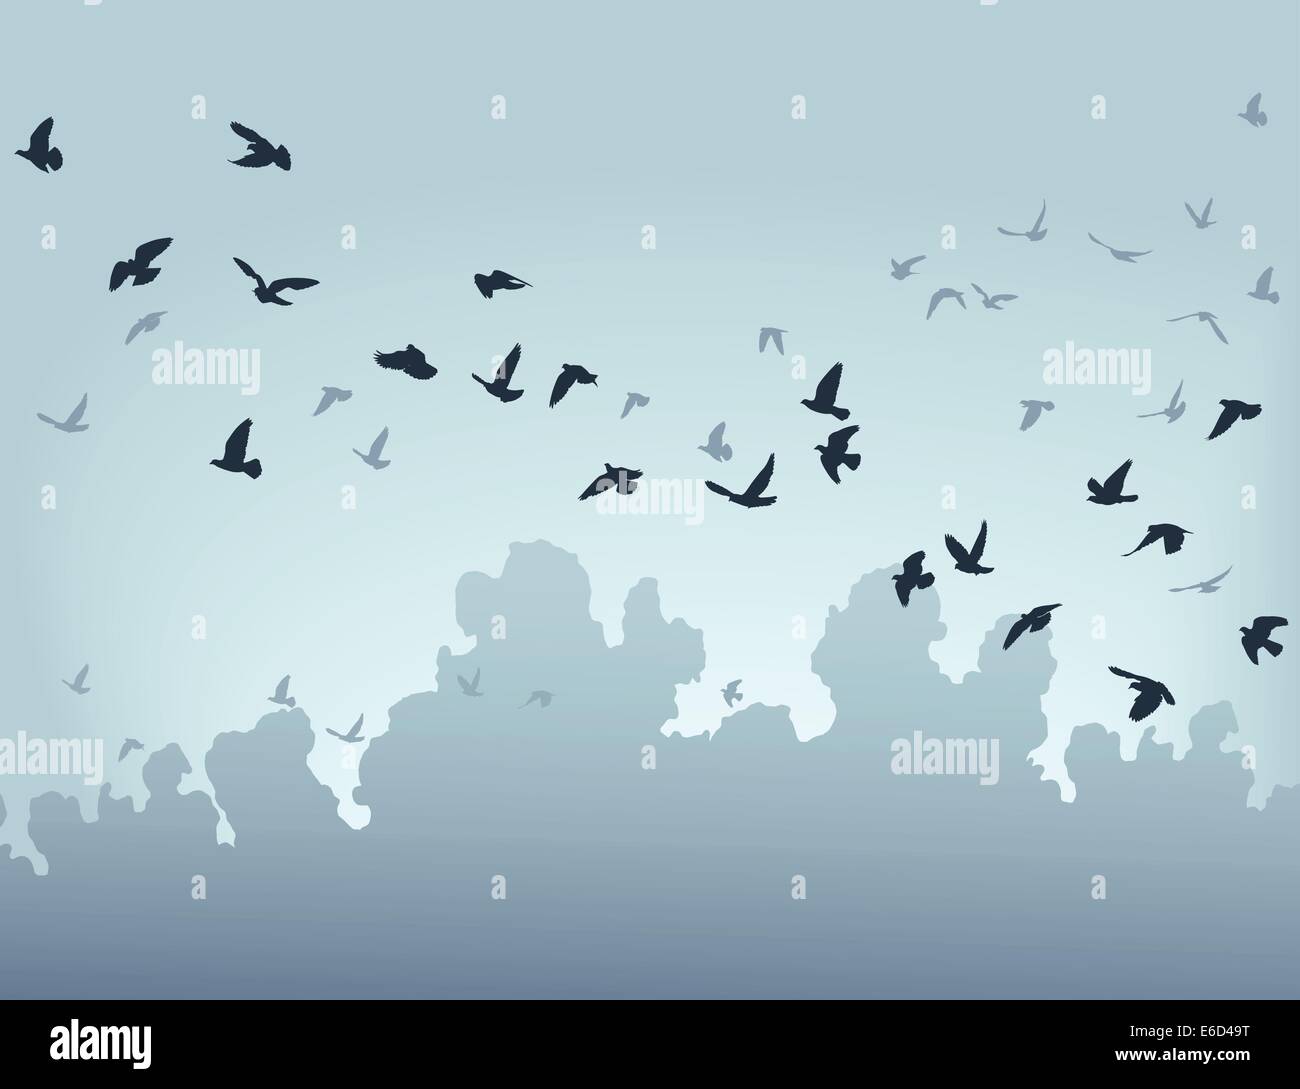 Illustrazione Vettoriale di uno stormo di uccelli in volo Illustrazione Vettoriale